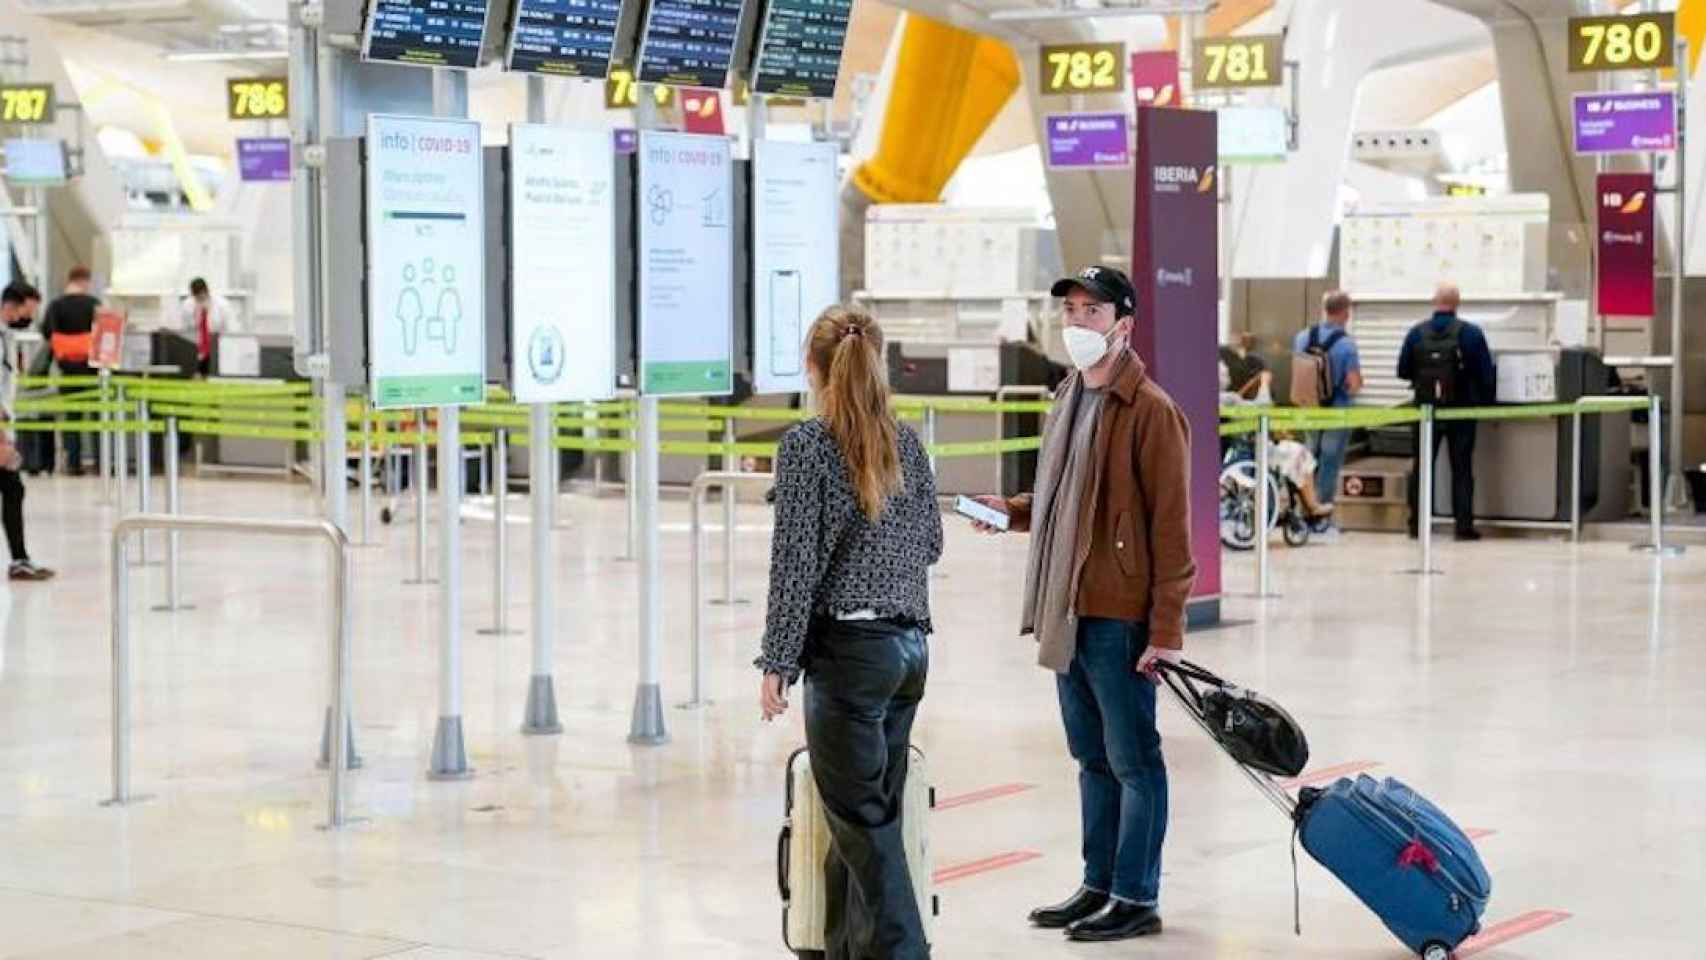 Dos personas con su equipaje en la T4 del aeropuerto Adolfo Suárez, Madrid-Barajas / EP - A. Pérez Meca / EP